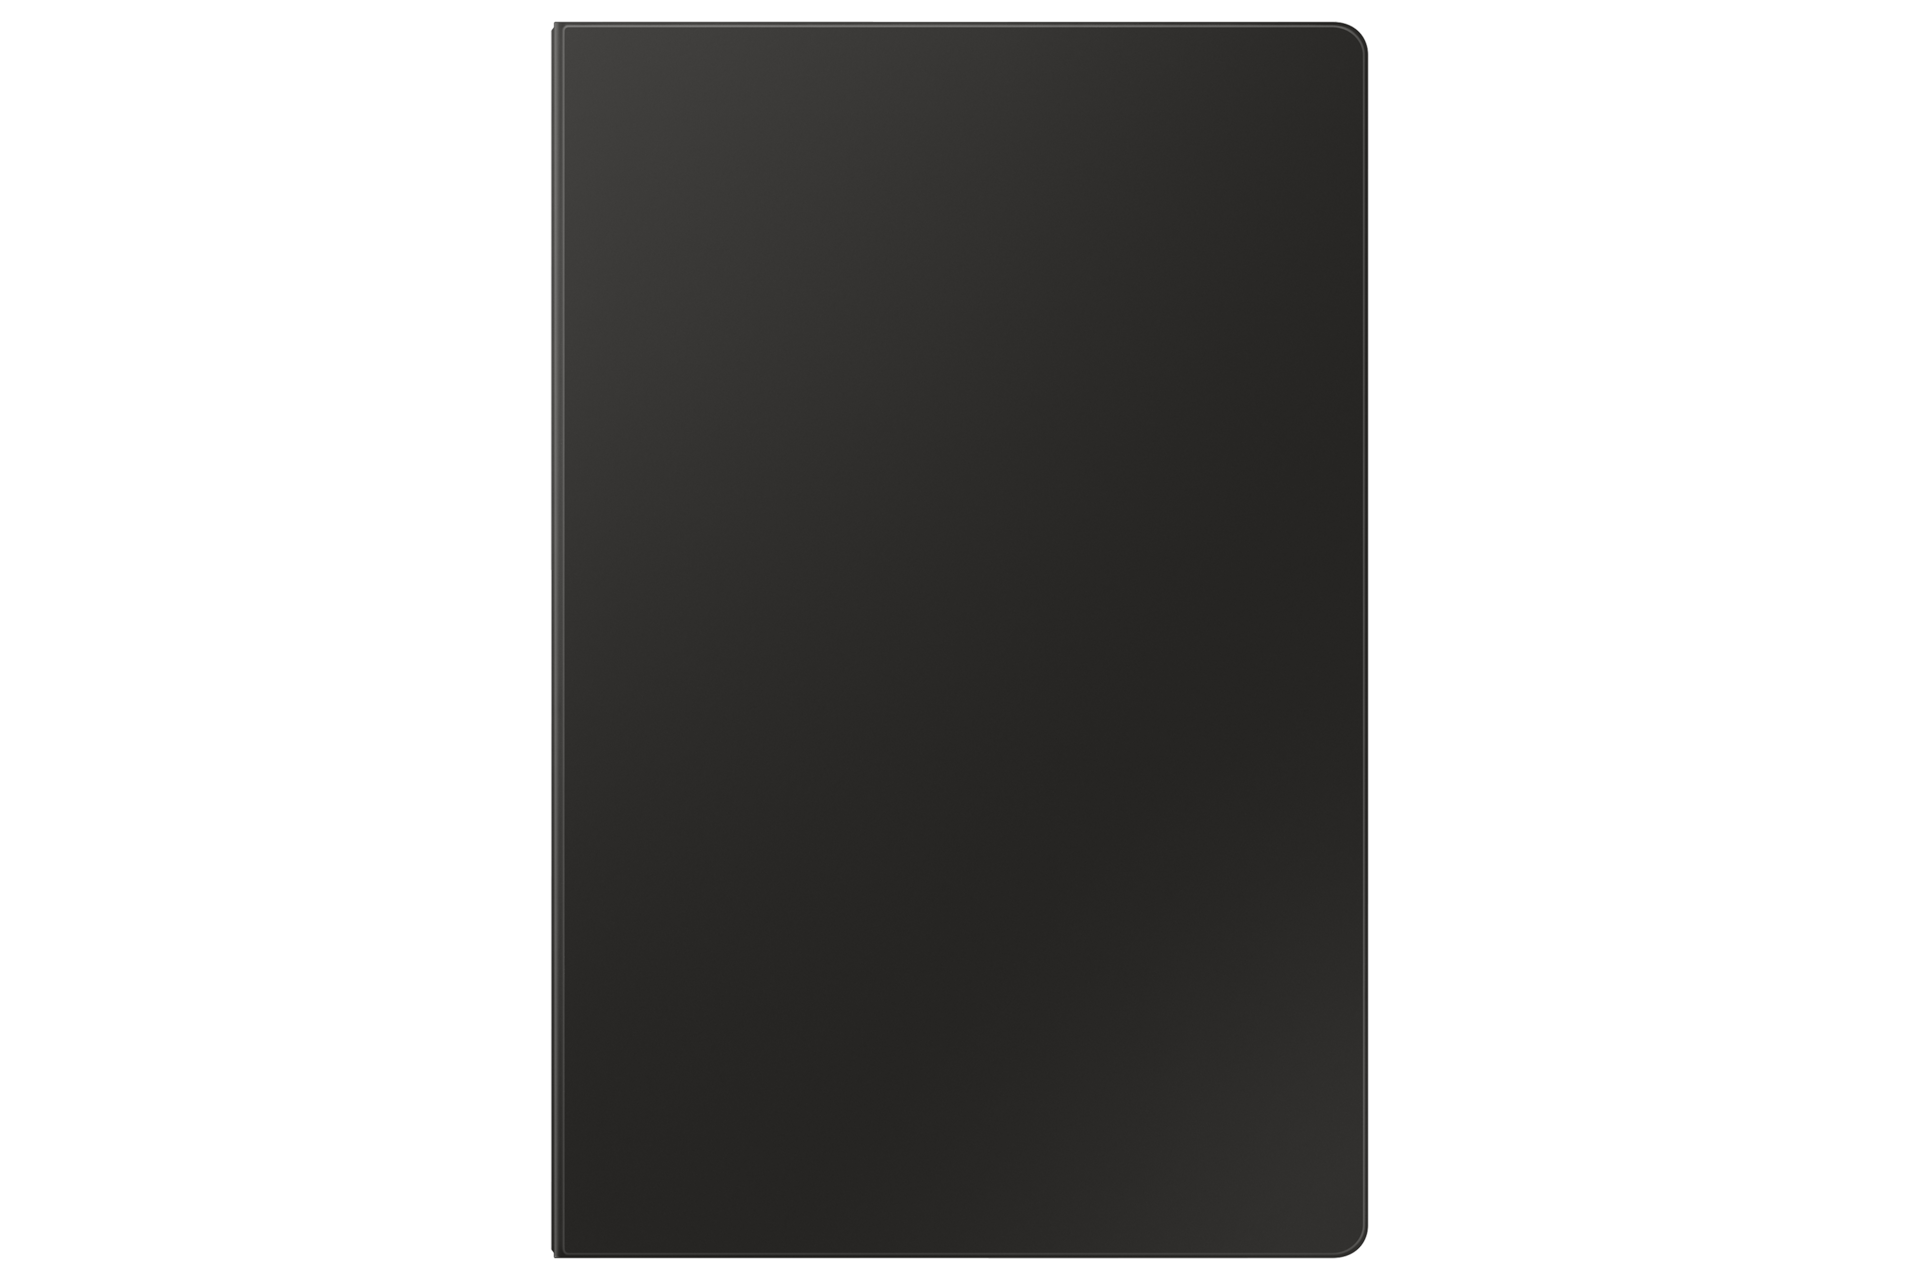 갤럭시 탭 S9 Ultra 키보드 북커버 (블랙) 제품에 갤럭시 탭을 장착한 후면 이미지 